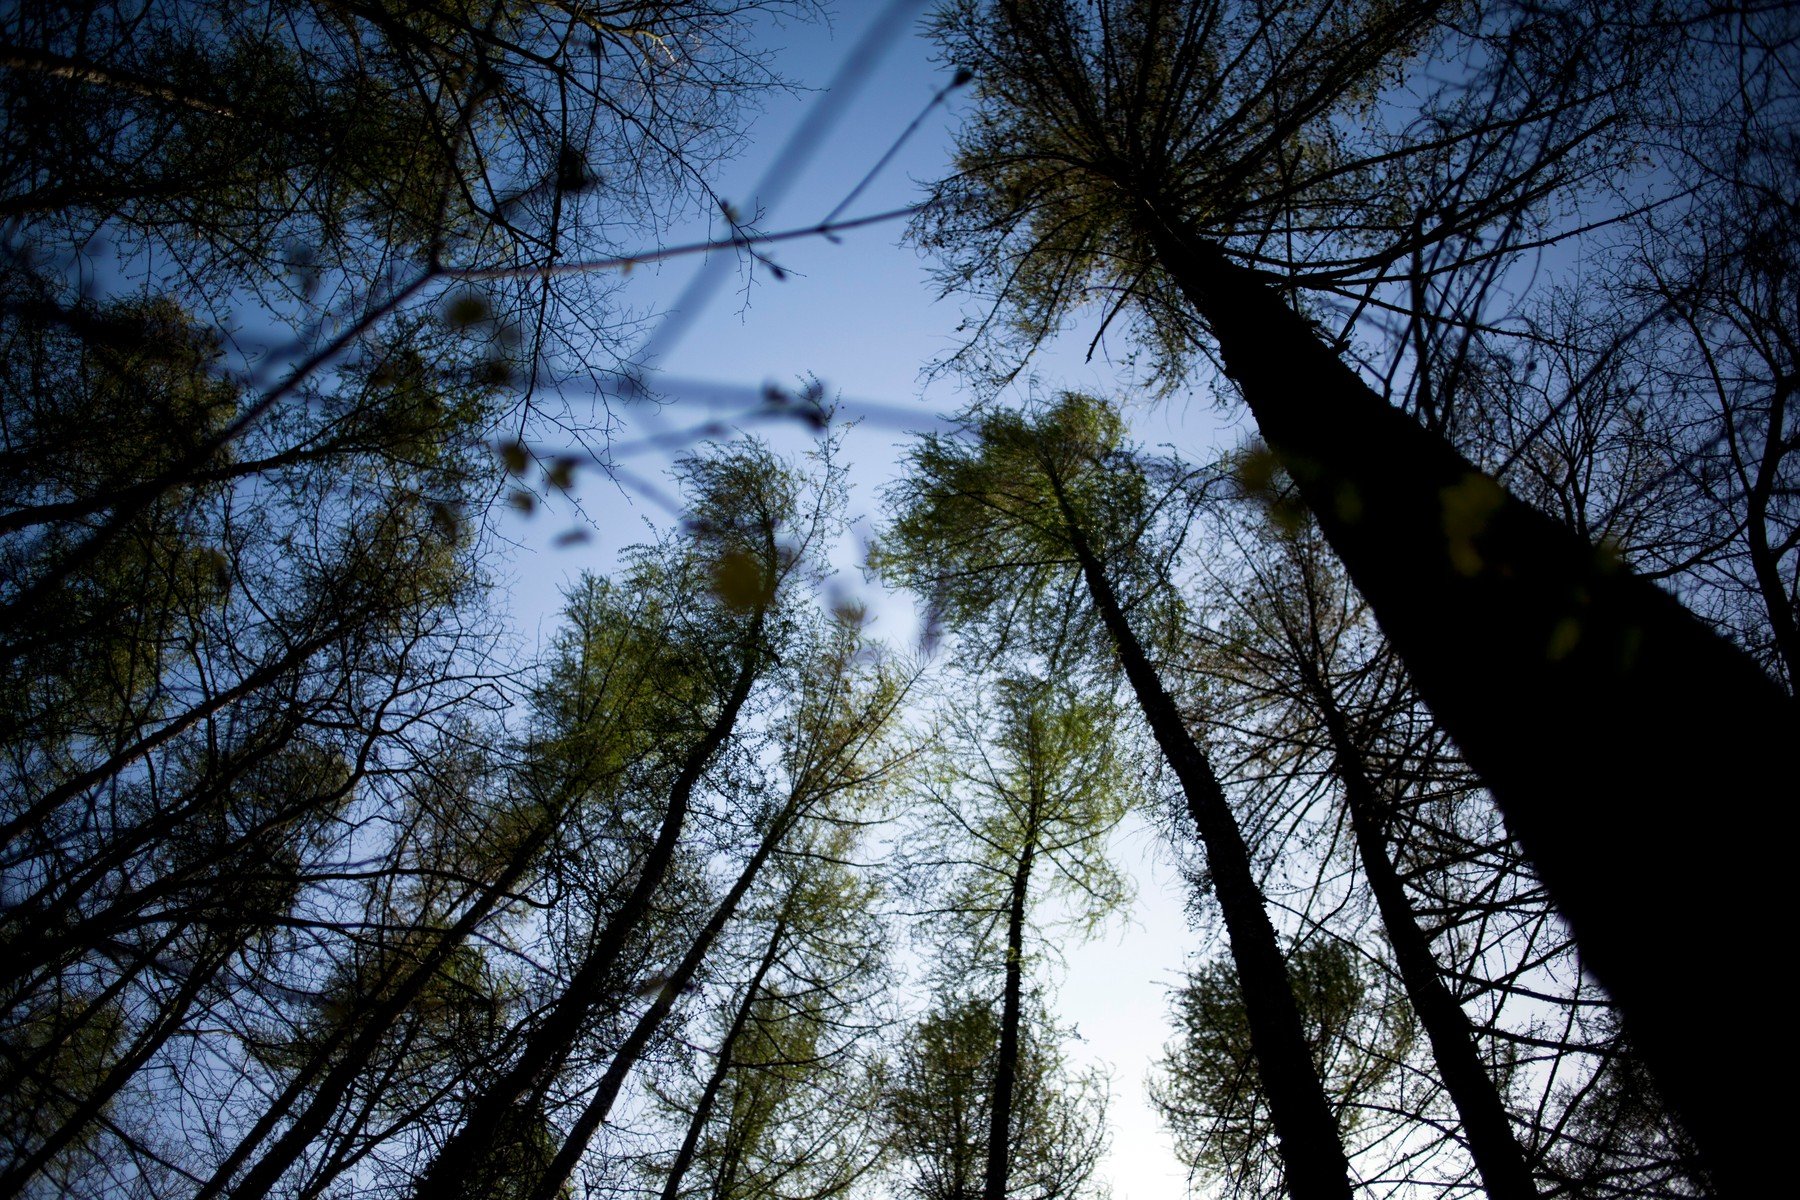 Egykori óriások análgyöngyeinek nyomaira bukkantak az erdőkben? Megdöbbentő felfedezés